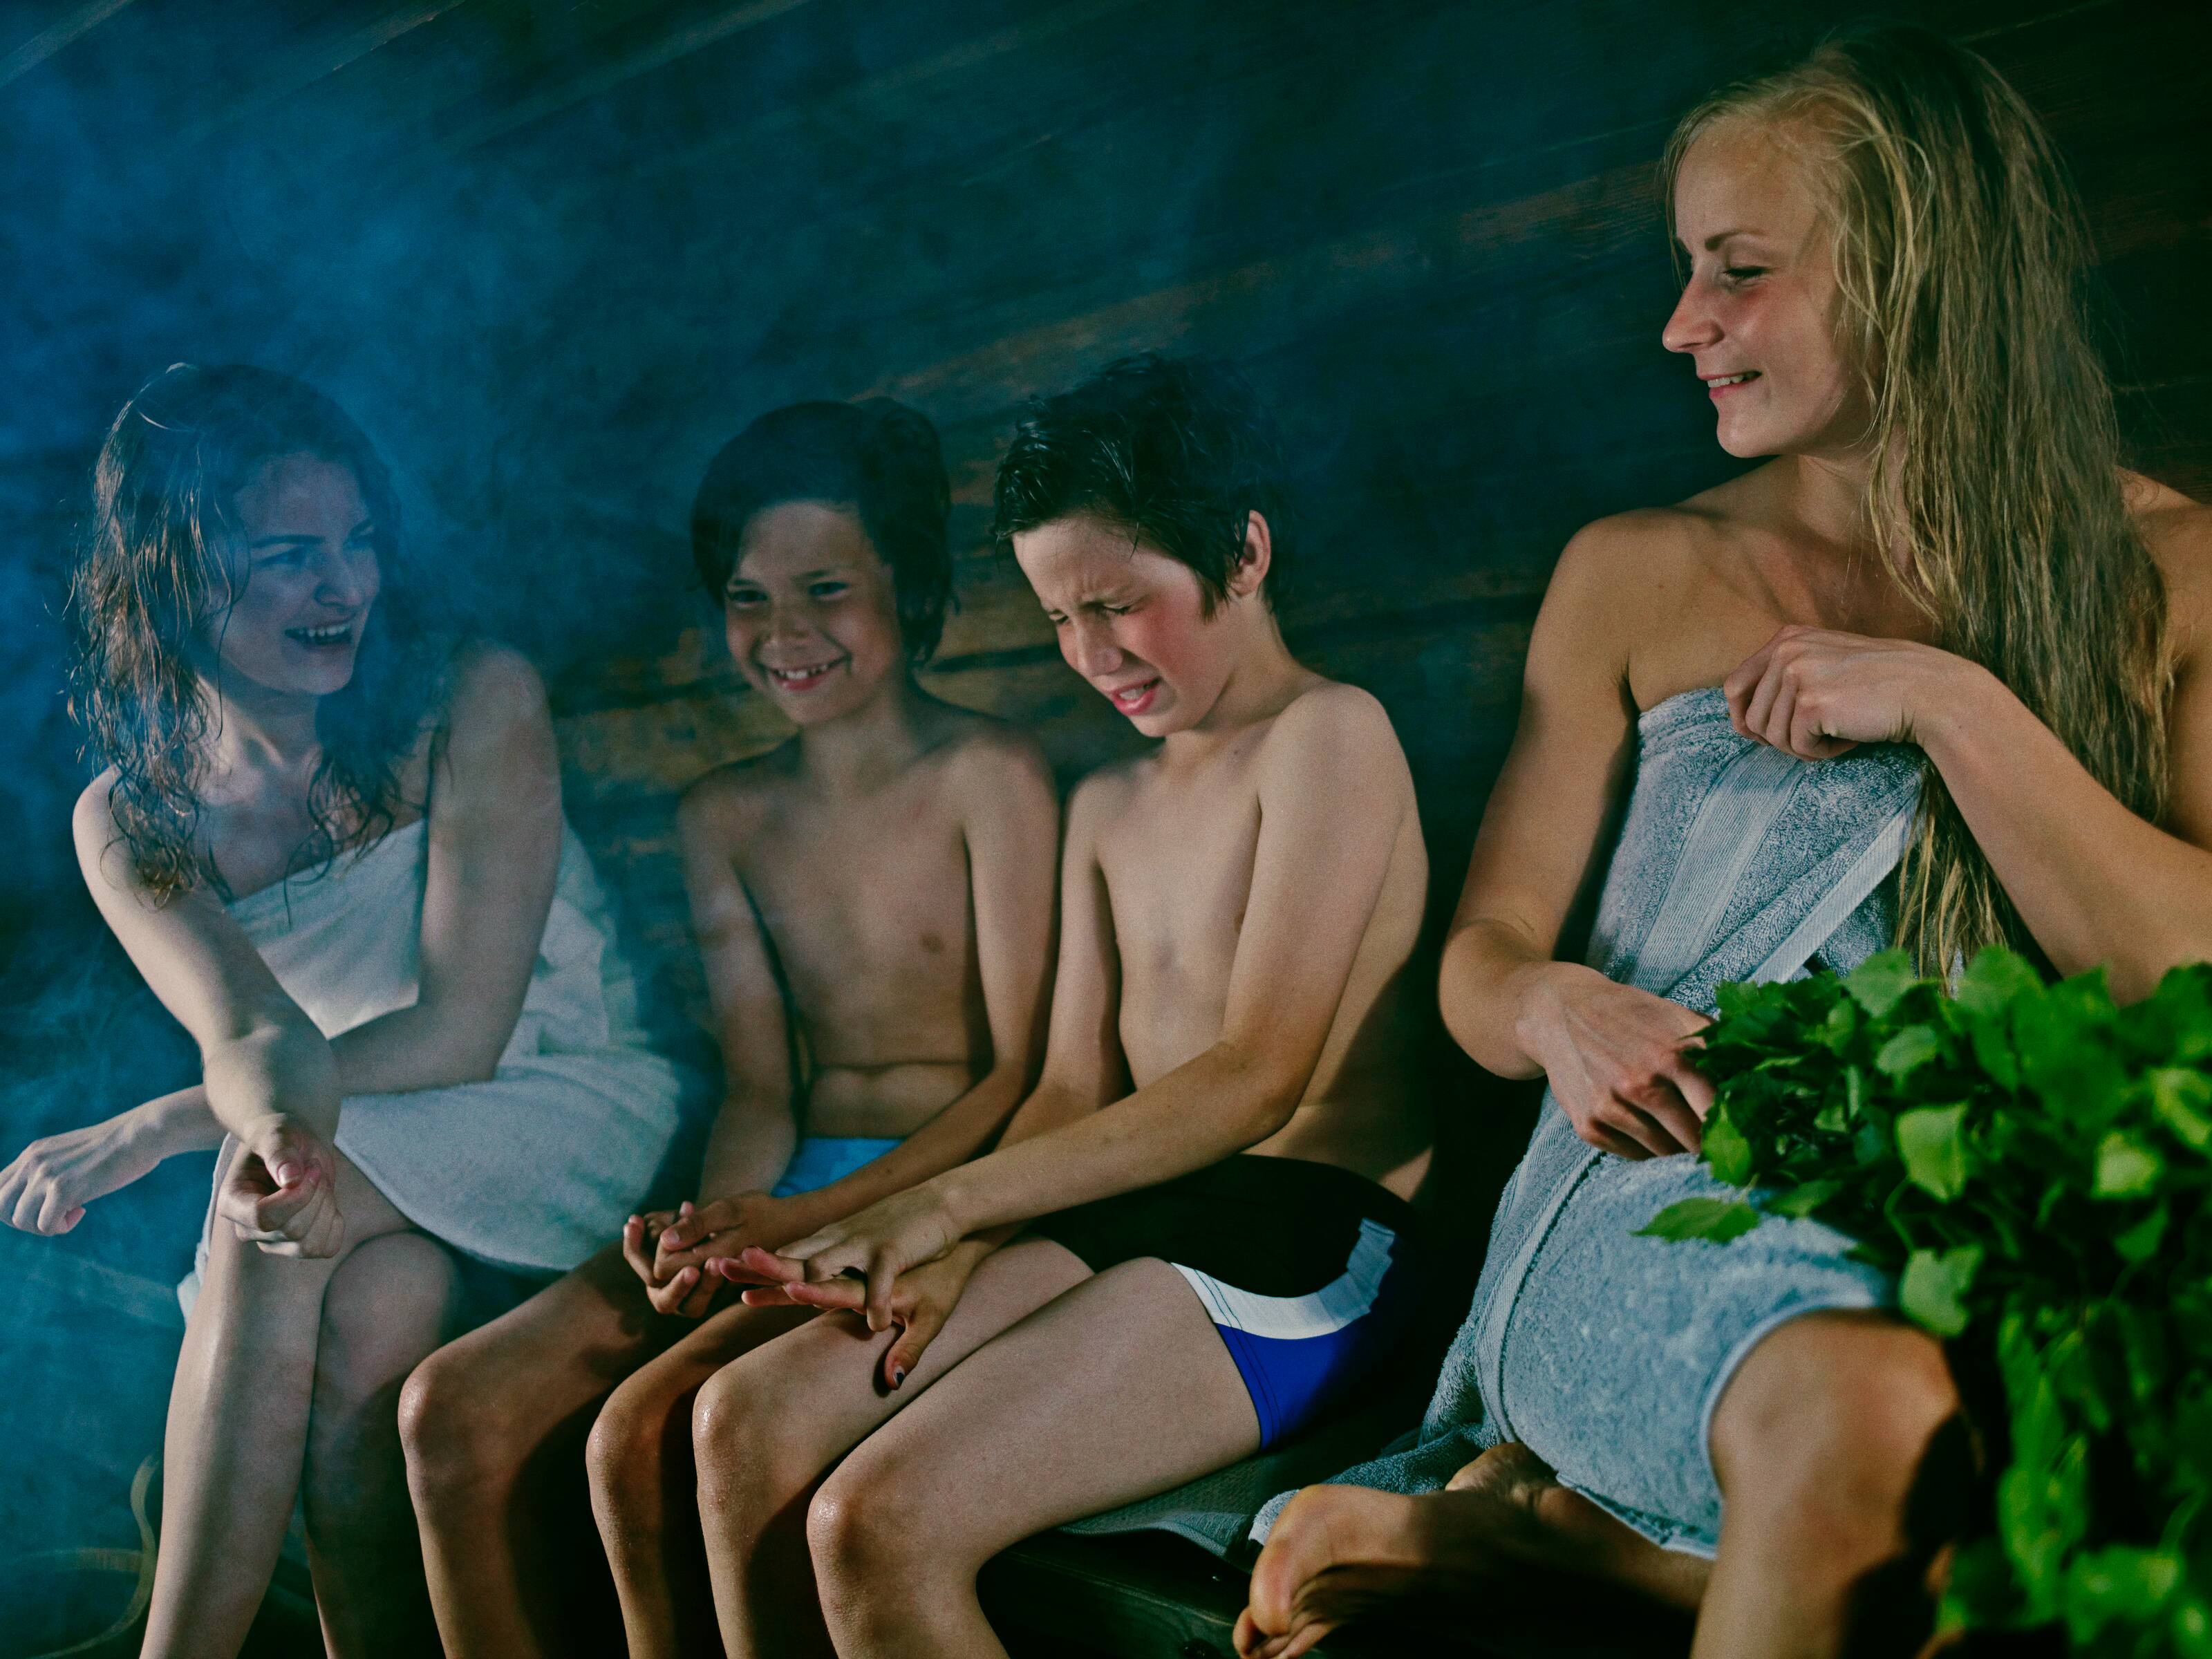 donne e bambini che si godono la loro prima volta in una sauna finlandese